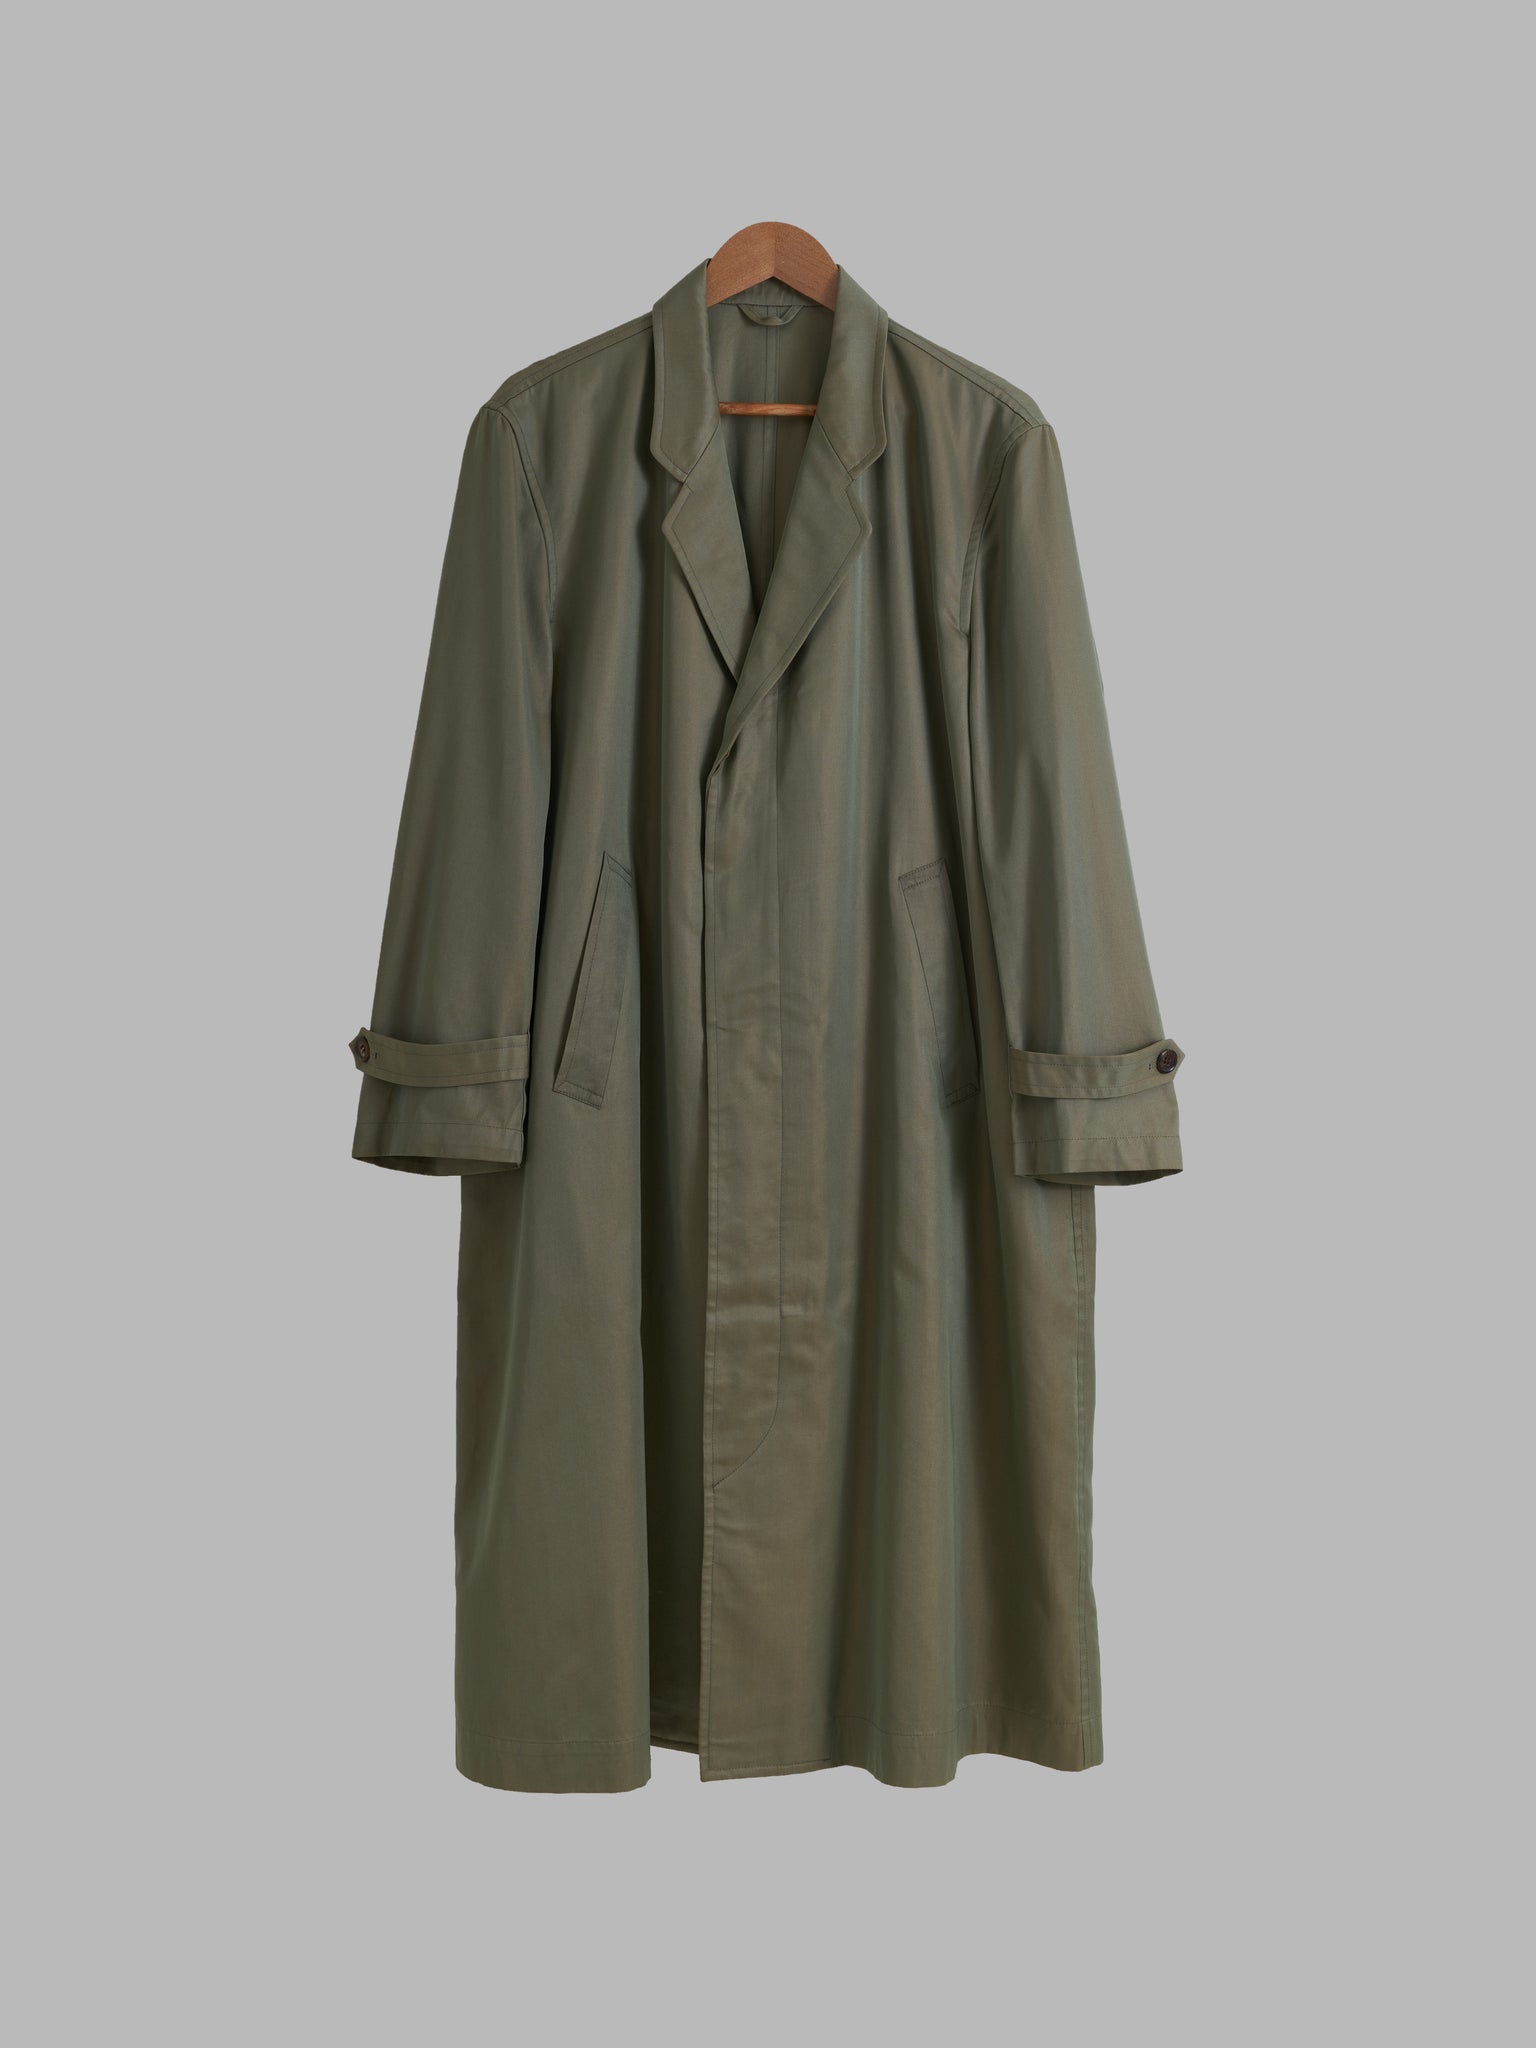 Homme Comme des Garcons 1980s khaki cotton iridescent covered placket coat - M